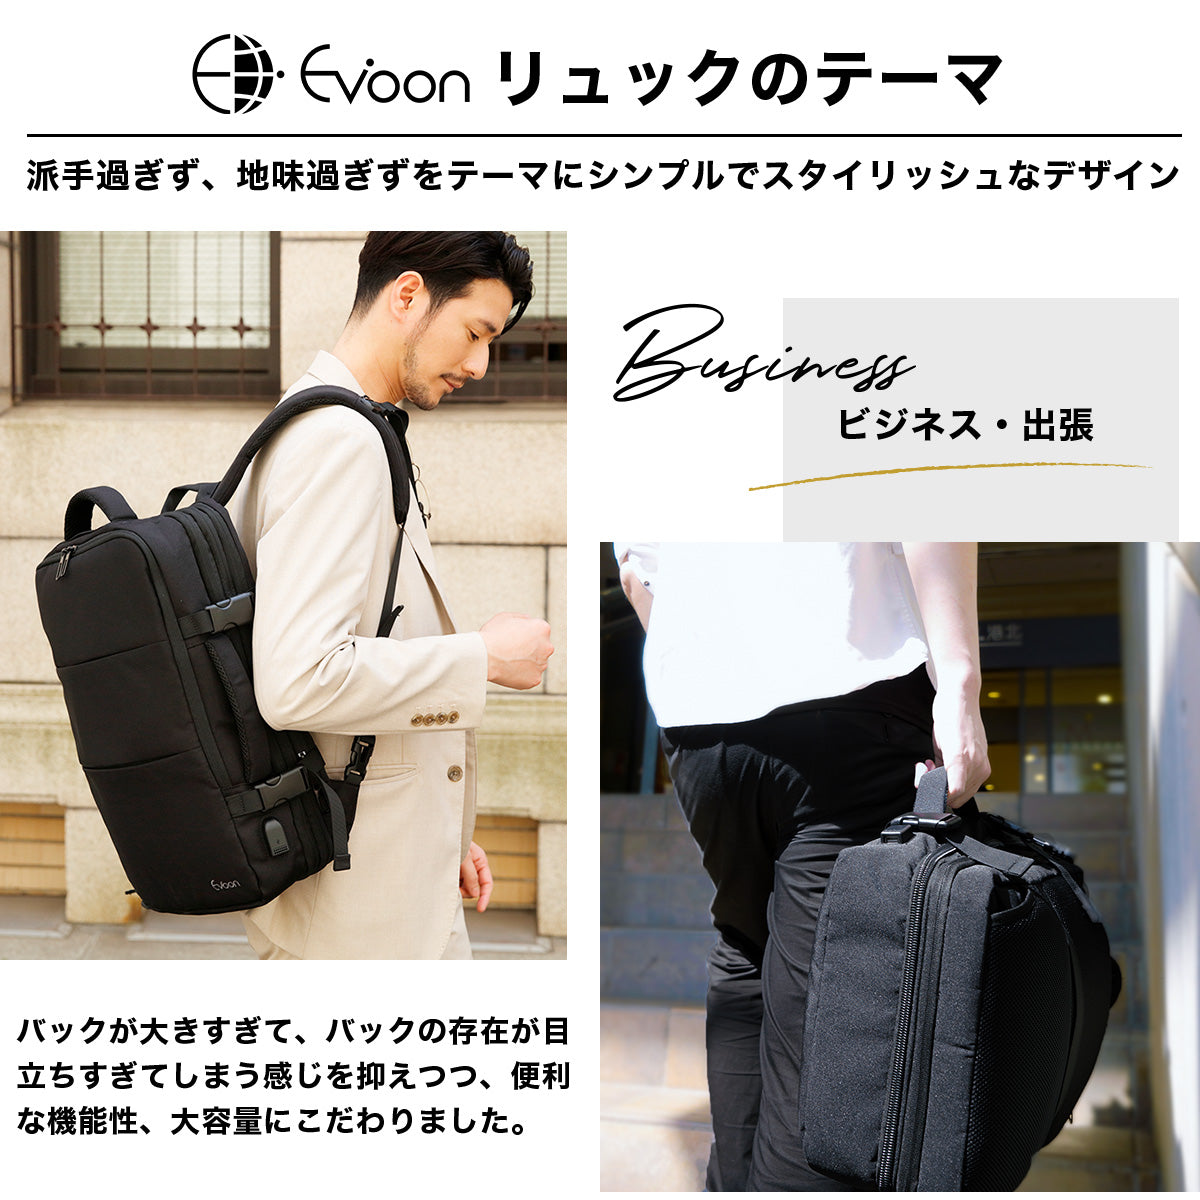 【美品】Evoon マルチビジネスリュック3.0 グレー